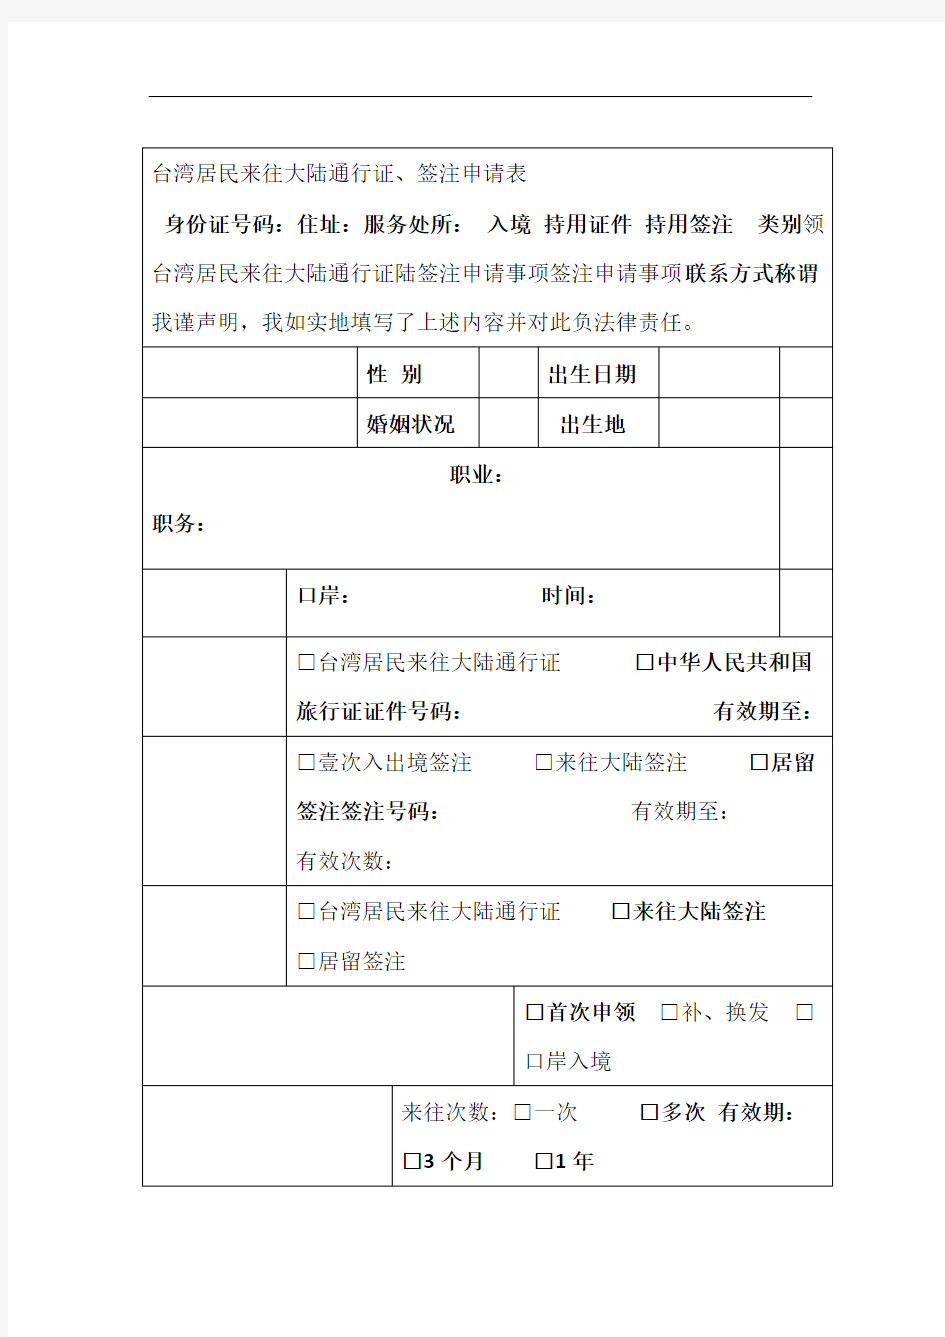 台湾居民来往大陆通行证签注申请表